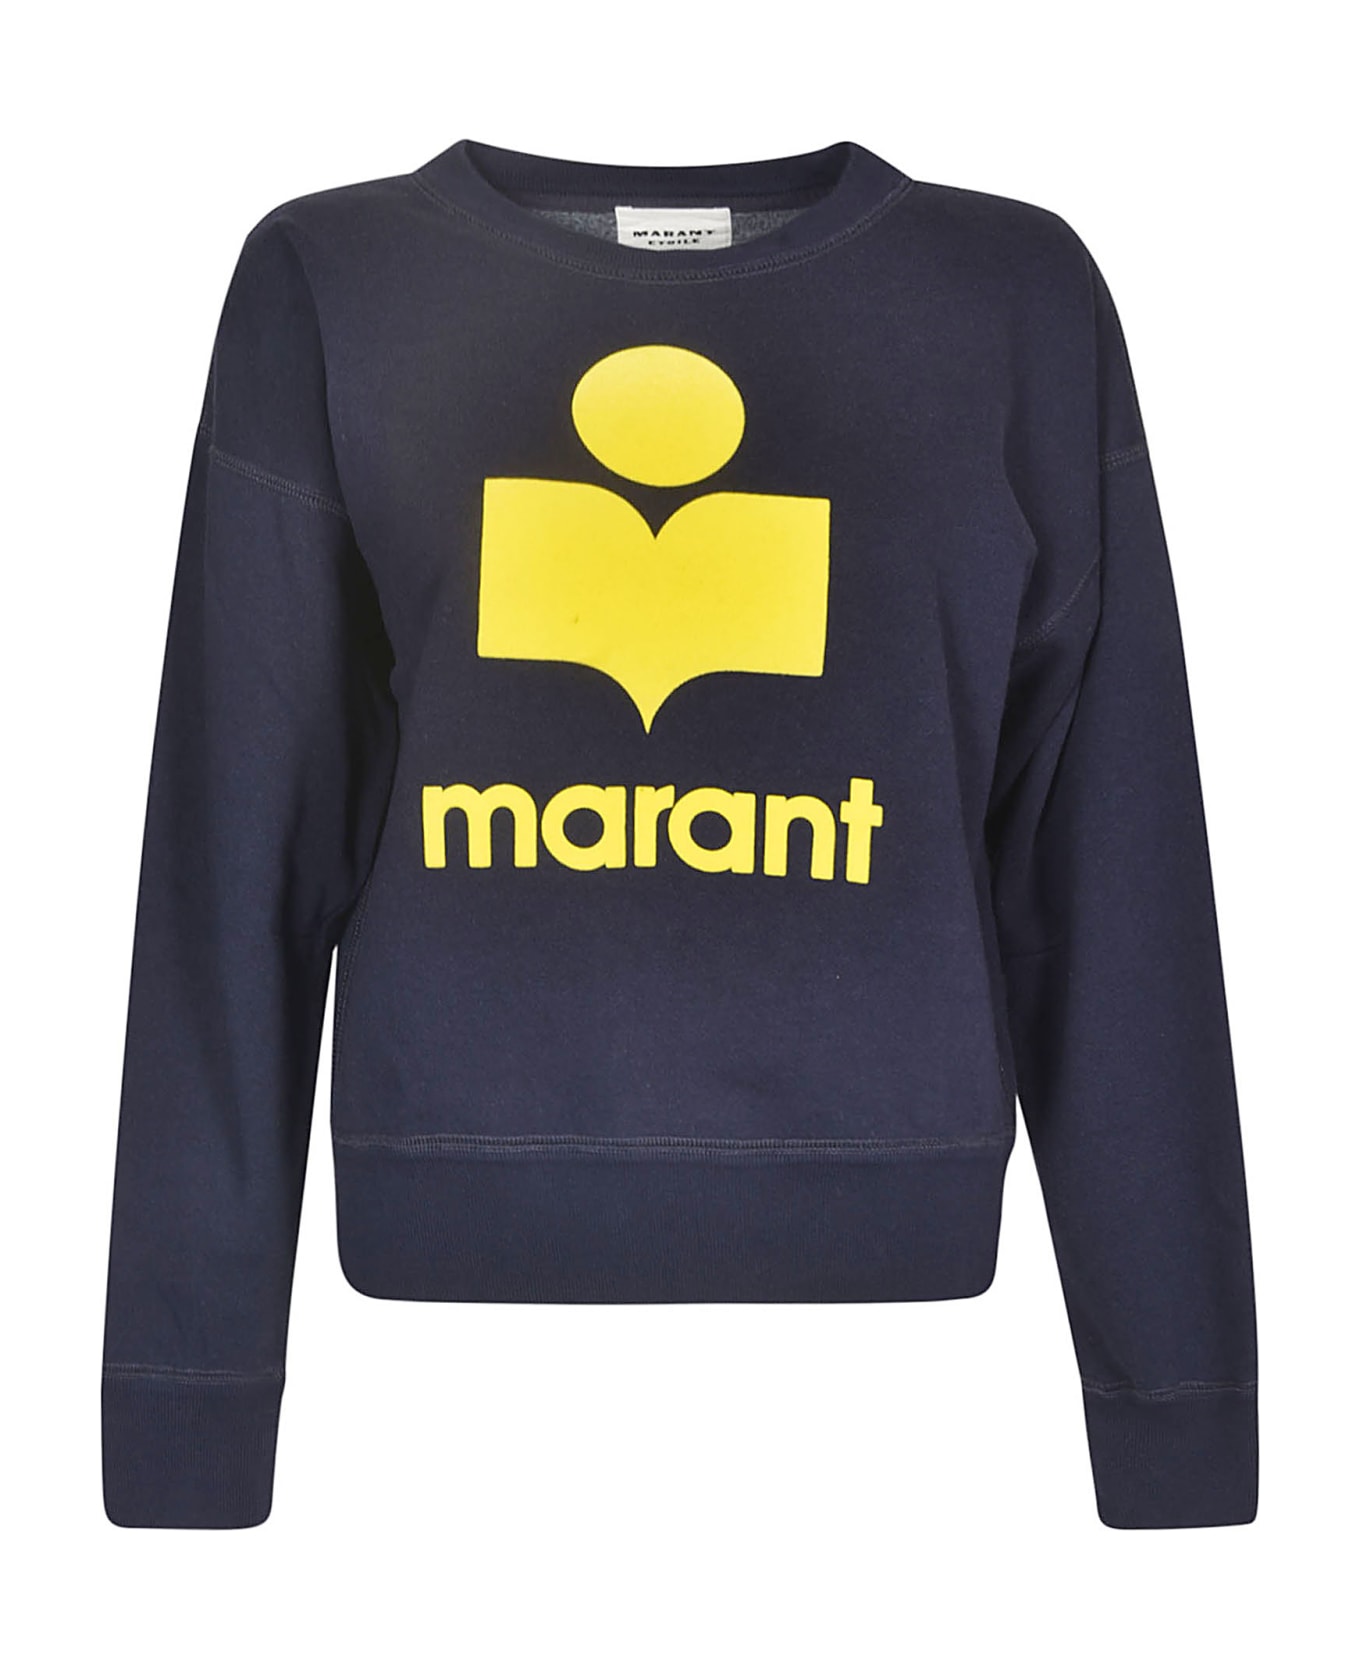 Marant Étoile Mobyli Sweatshirt - Navy/Yellow